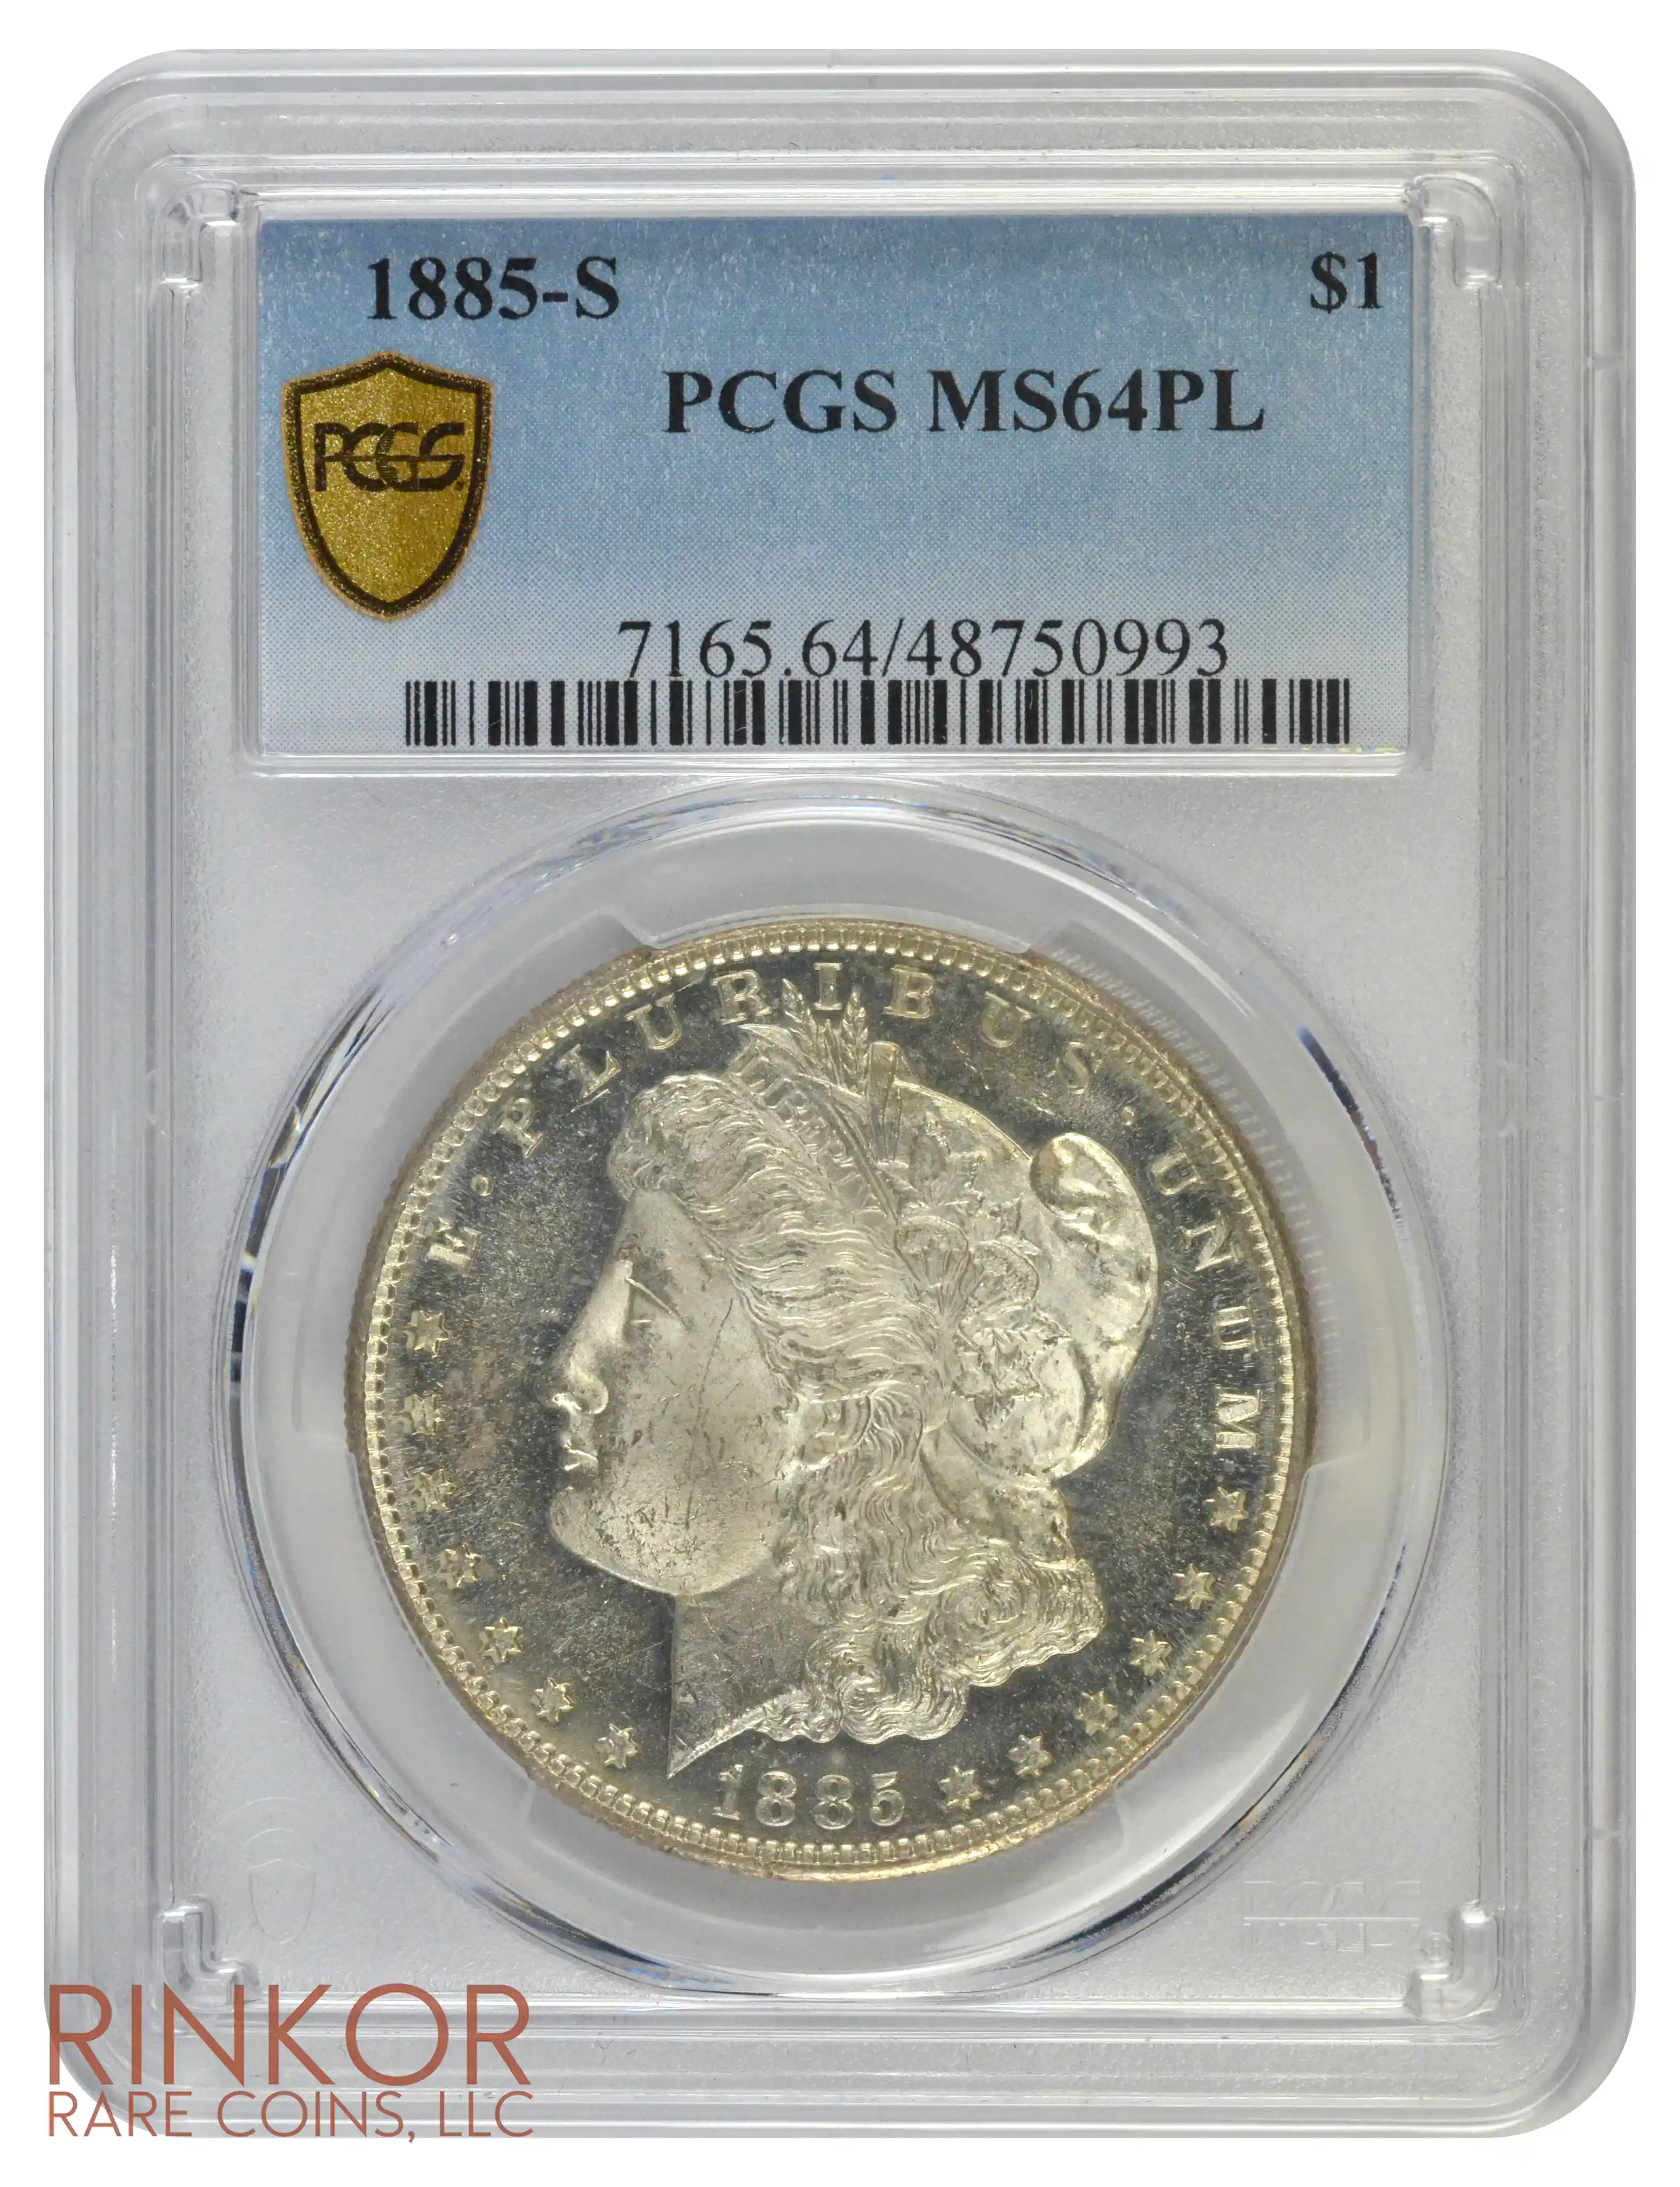 1885-S $1 PCGS MS 64 PL